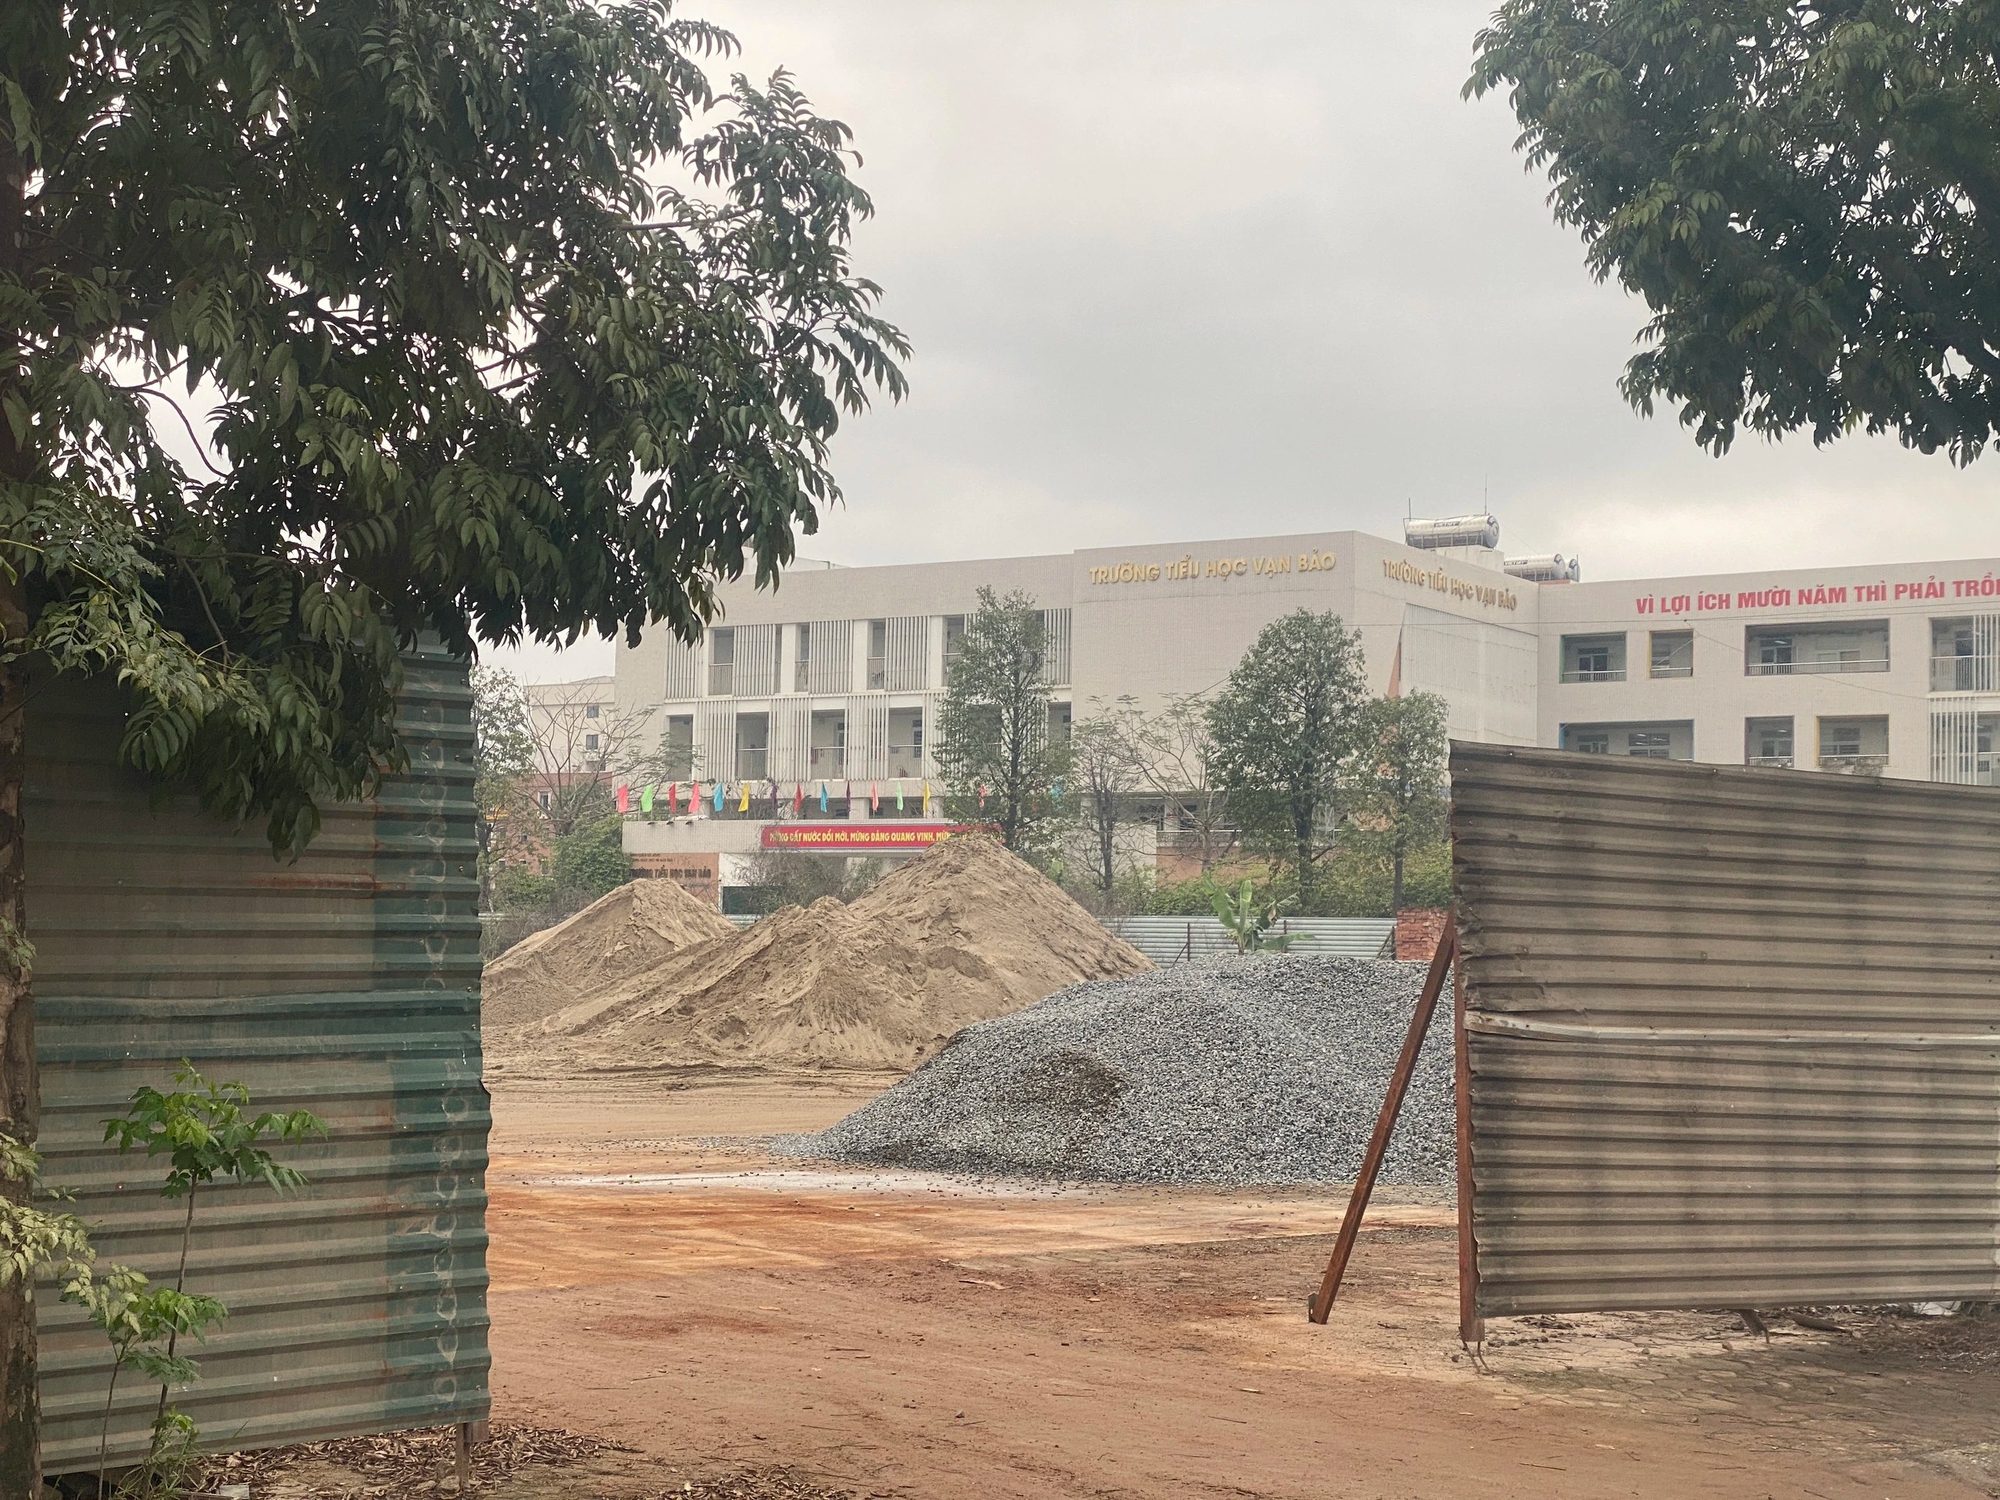 Nhiều điểm tập kết vật liệu xây dựng hoạt động trái phép gần trường học ở phường Vạn Phúc (Hà Nội)- Ảnh 1.